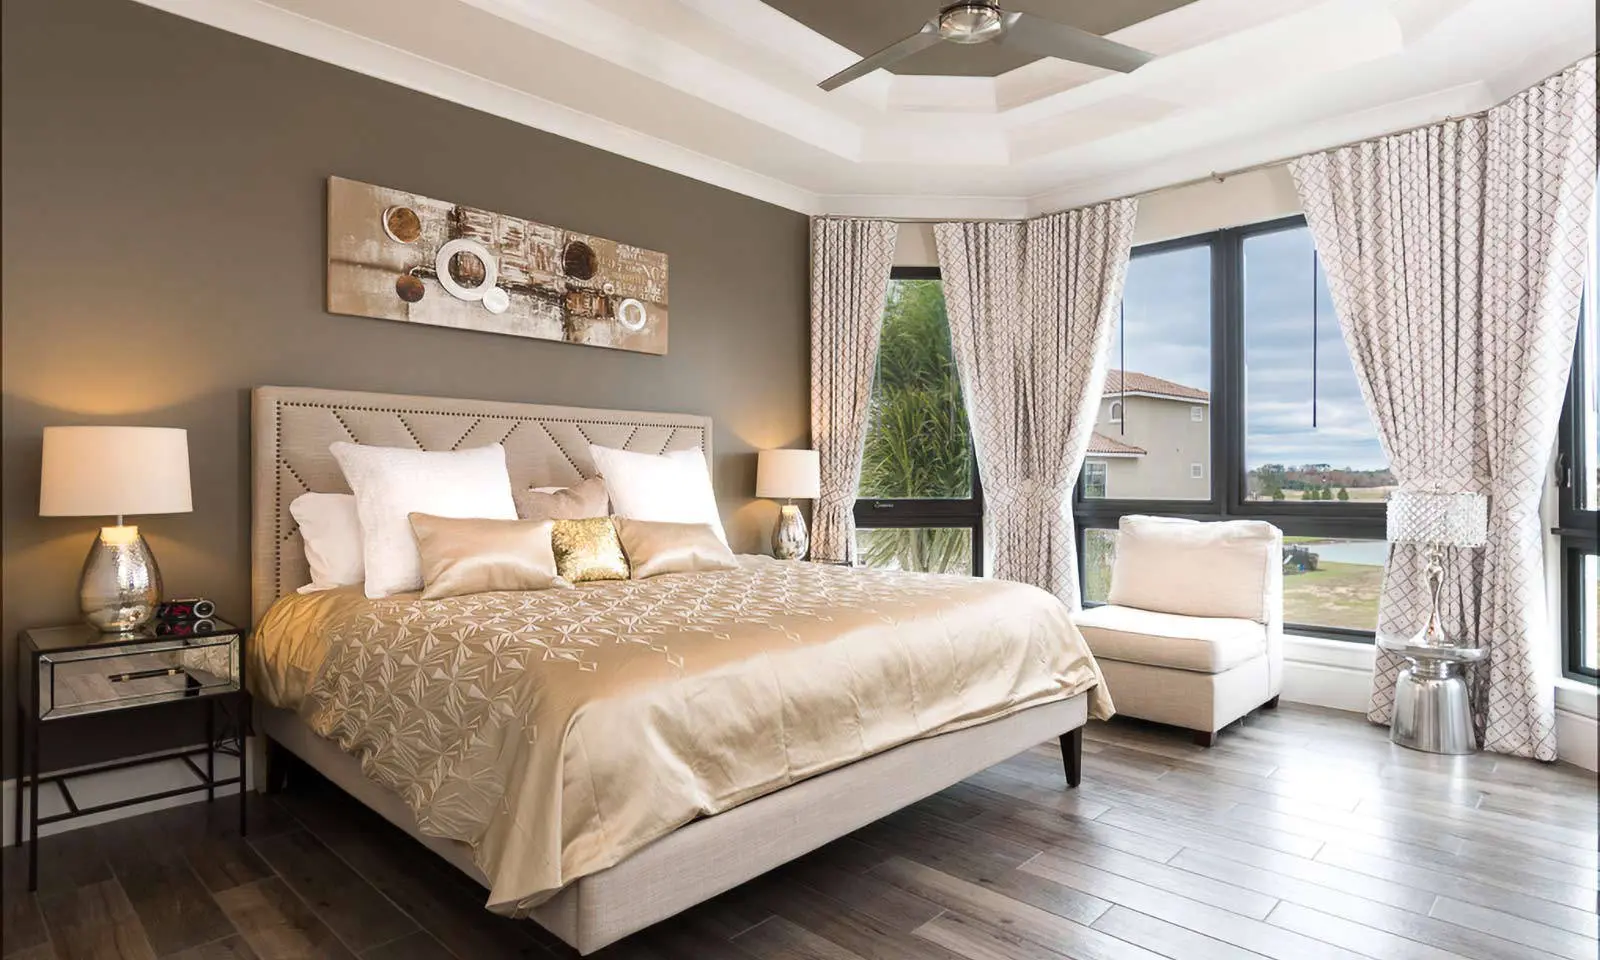 Orlando rental luxury bedroom 11 beds